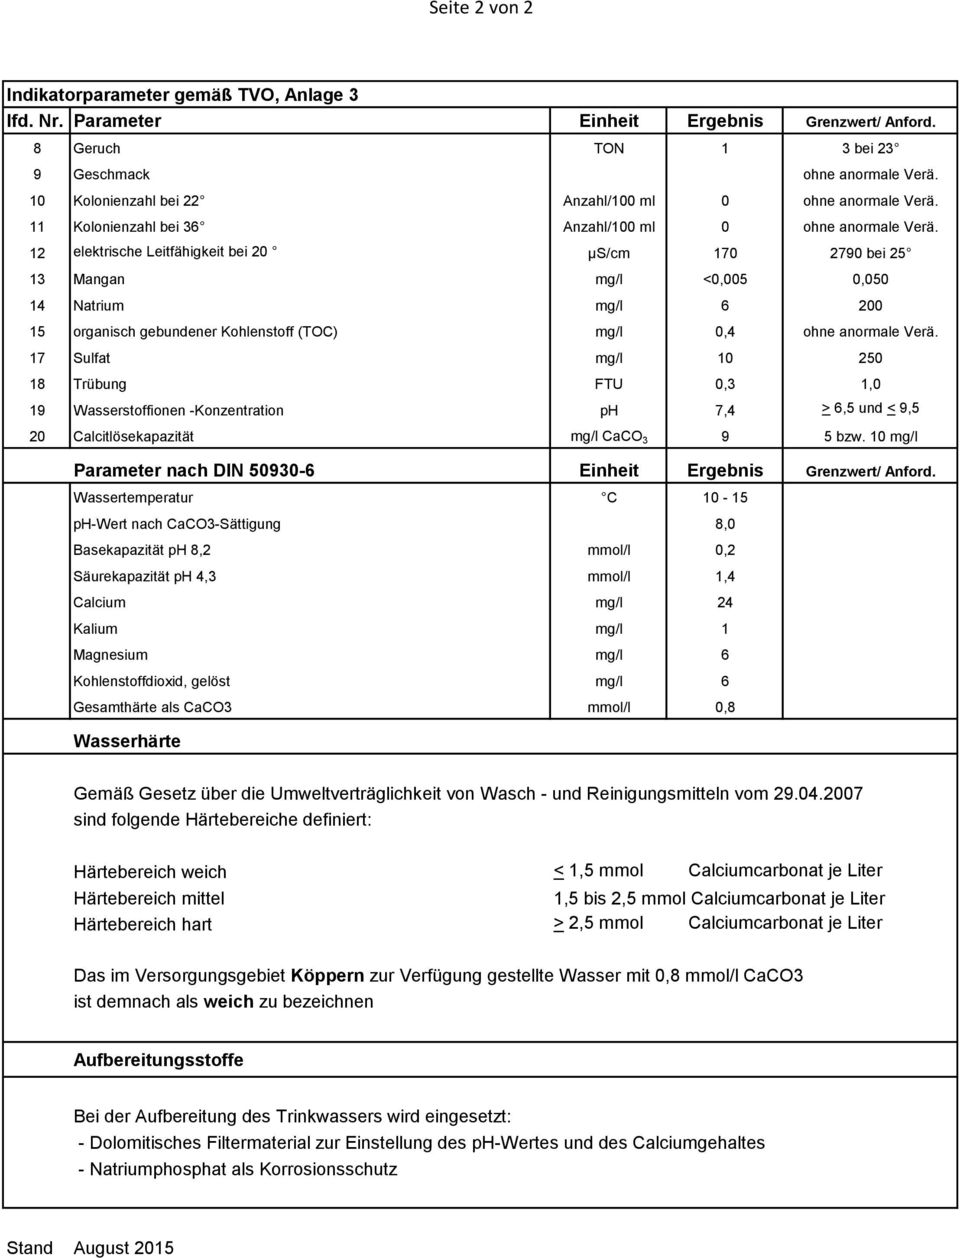 17 Sulfat mg/l 10 250 18 Trübung FTU 0,3 1,0 19 Wasserstoffionen -Konzentration ph 7,4 > 6,5 und < 9,5 20 Calcitlösekapazität mg/l CaCO 3 9 5 bzw.